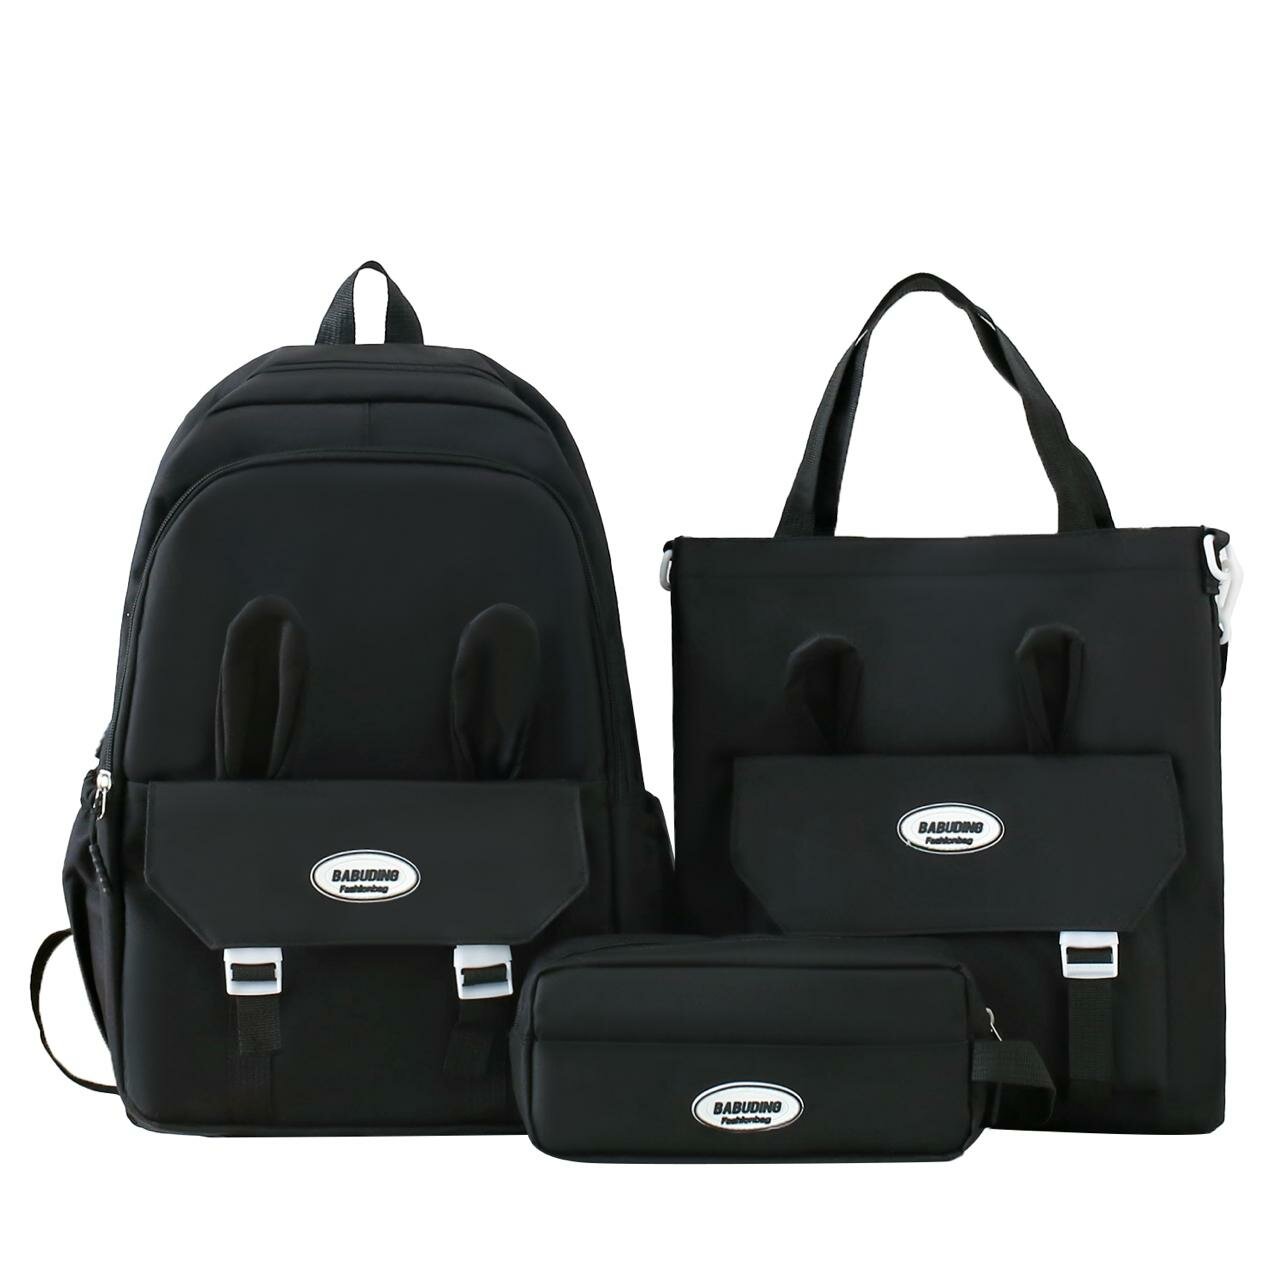 Рюкзак для девочки с комплектом 3в1 детский пенал, сумки, рюкзак для подростков девочек и для прогулки школьный набор уши-кролика